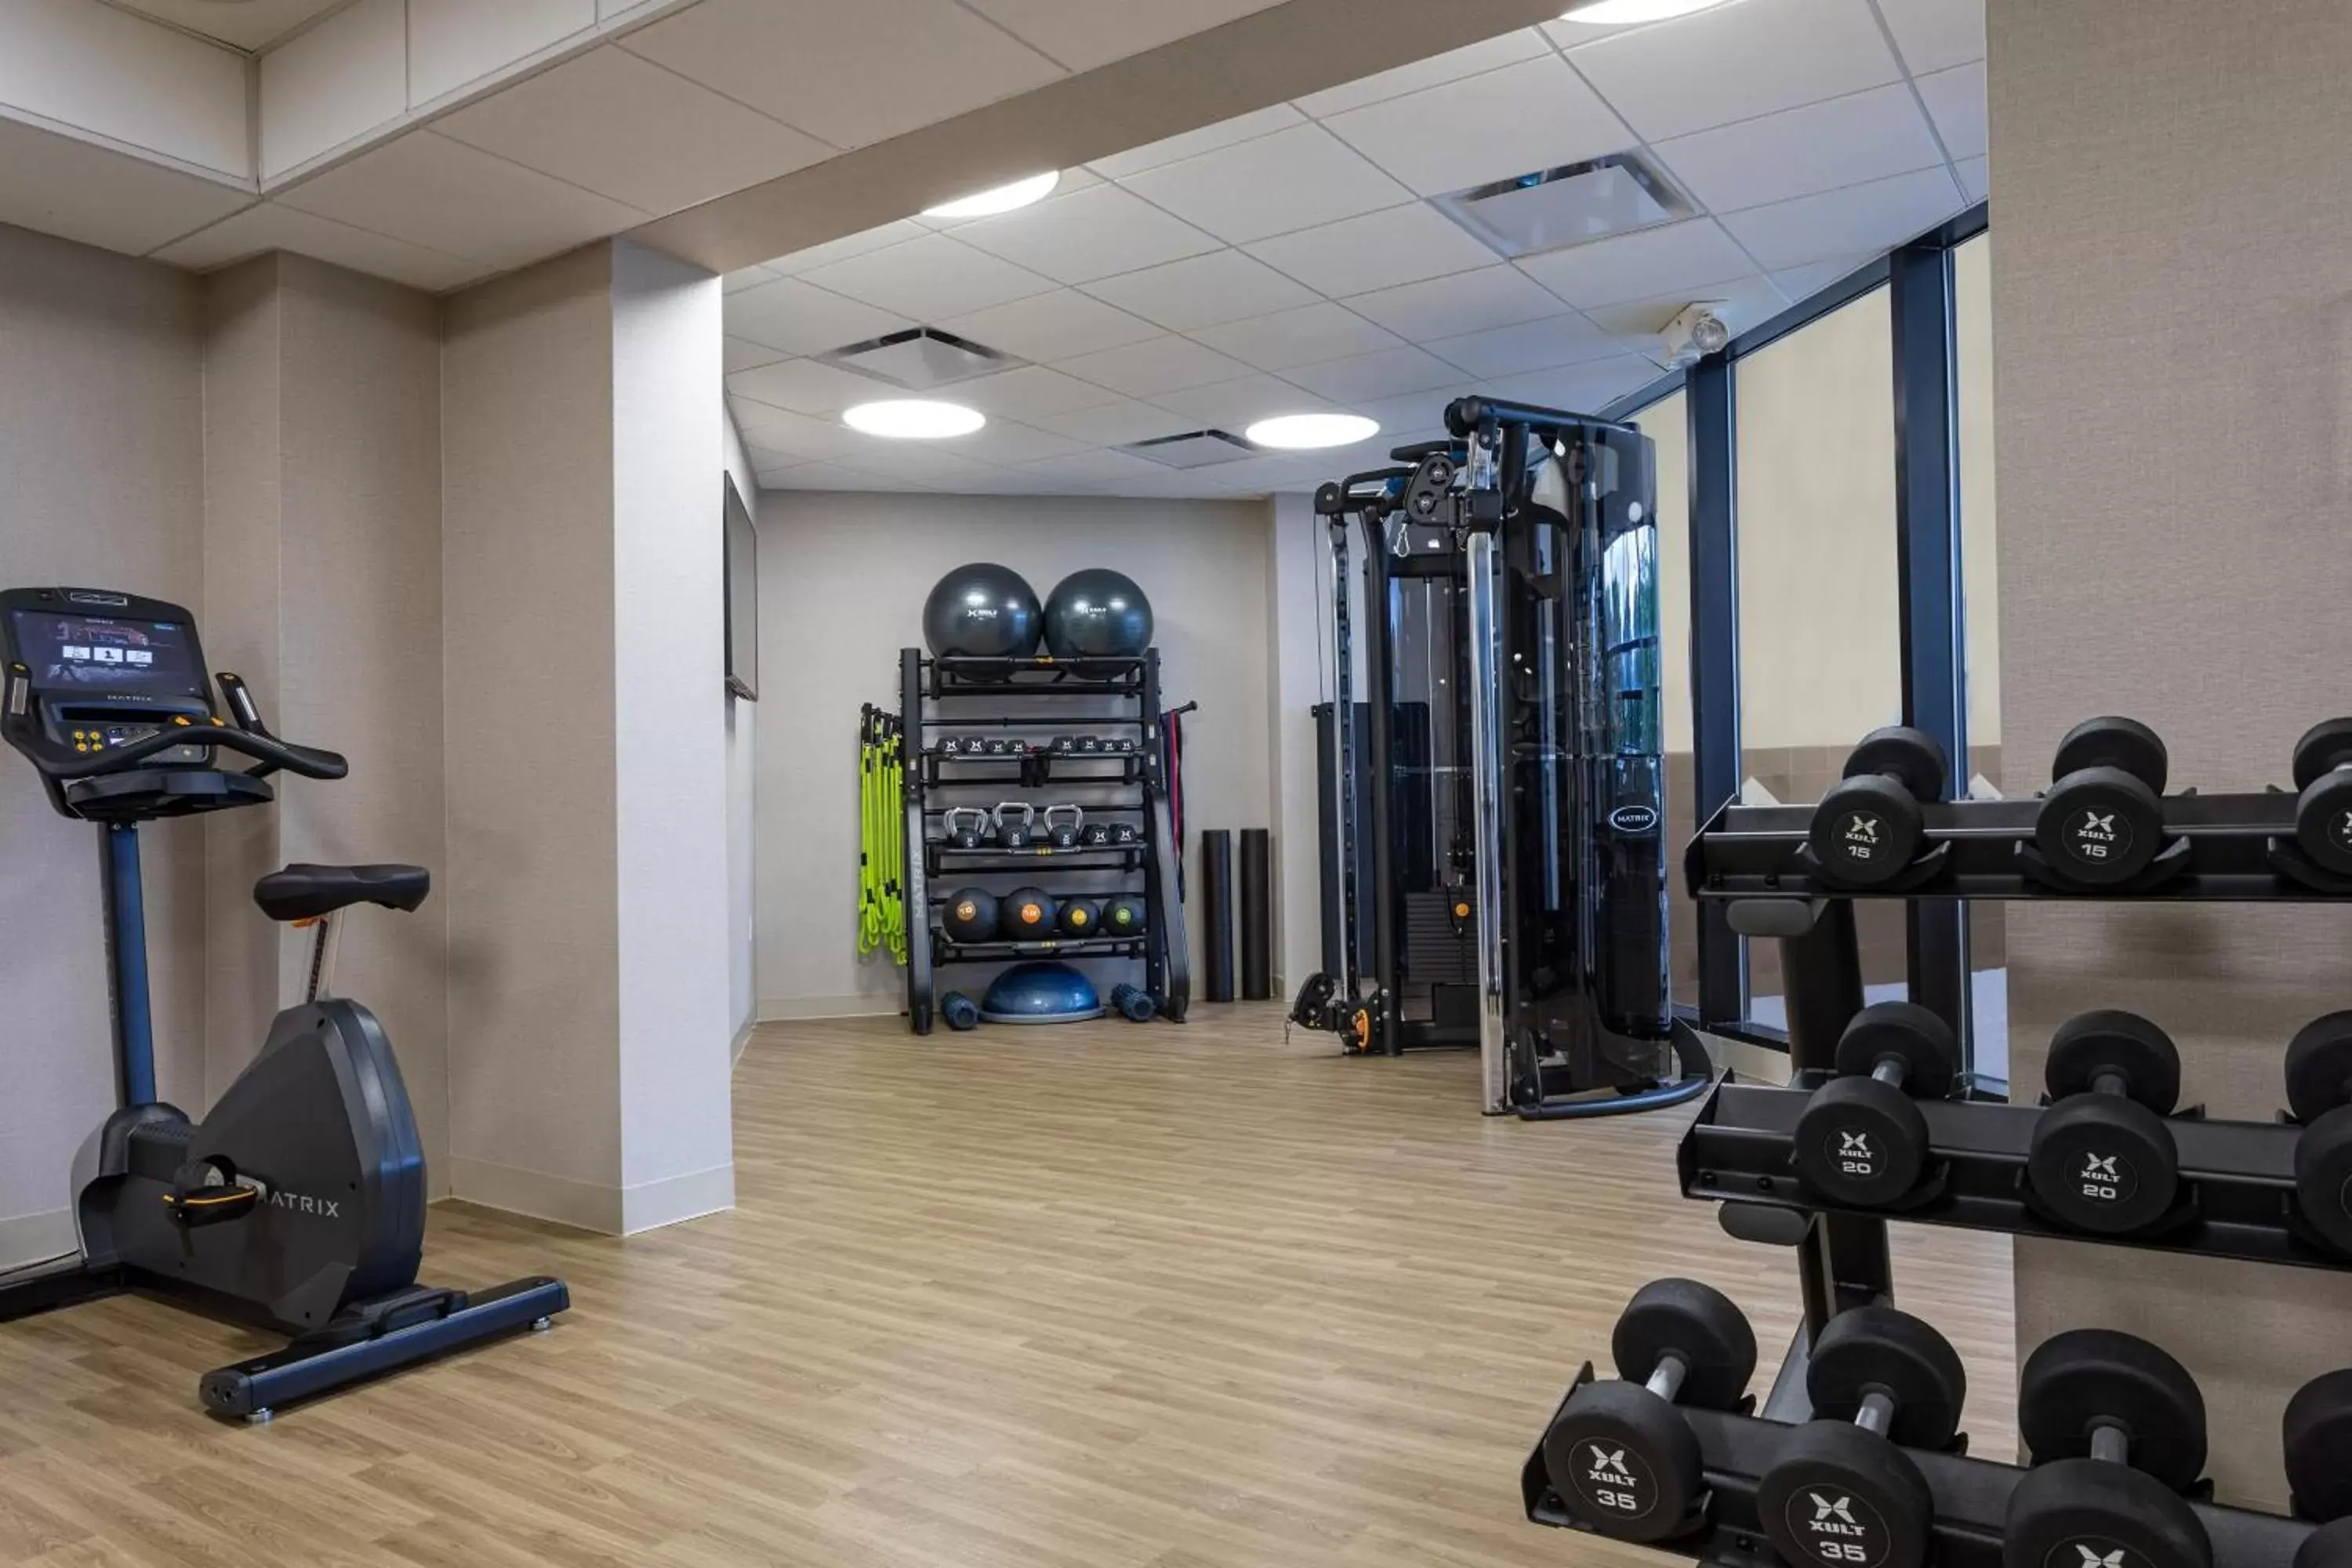 Fitness centre/facilities, Fitness Center/Facilities in Sheraton Edison